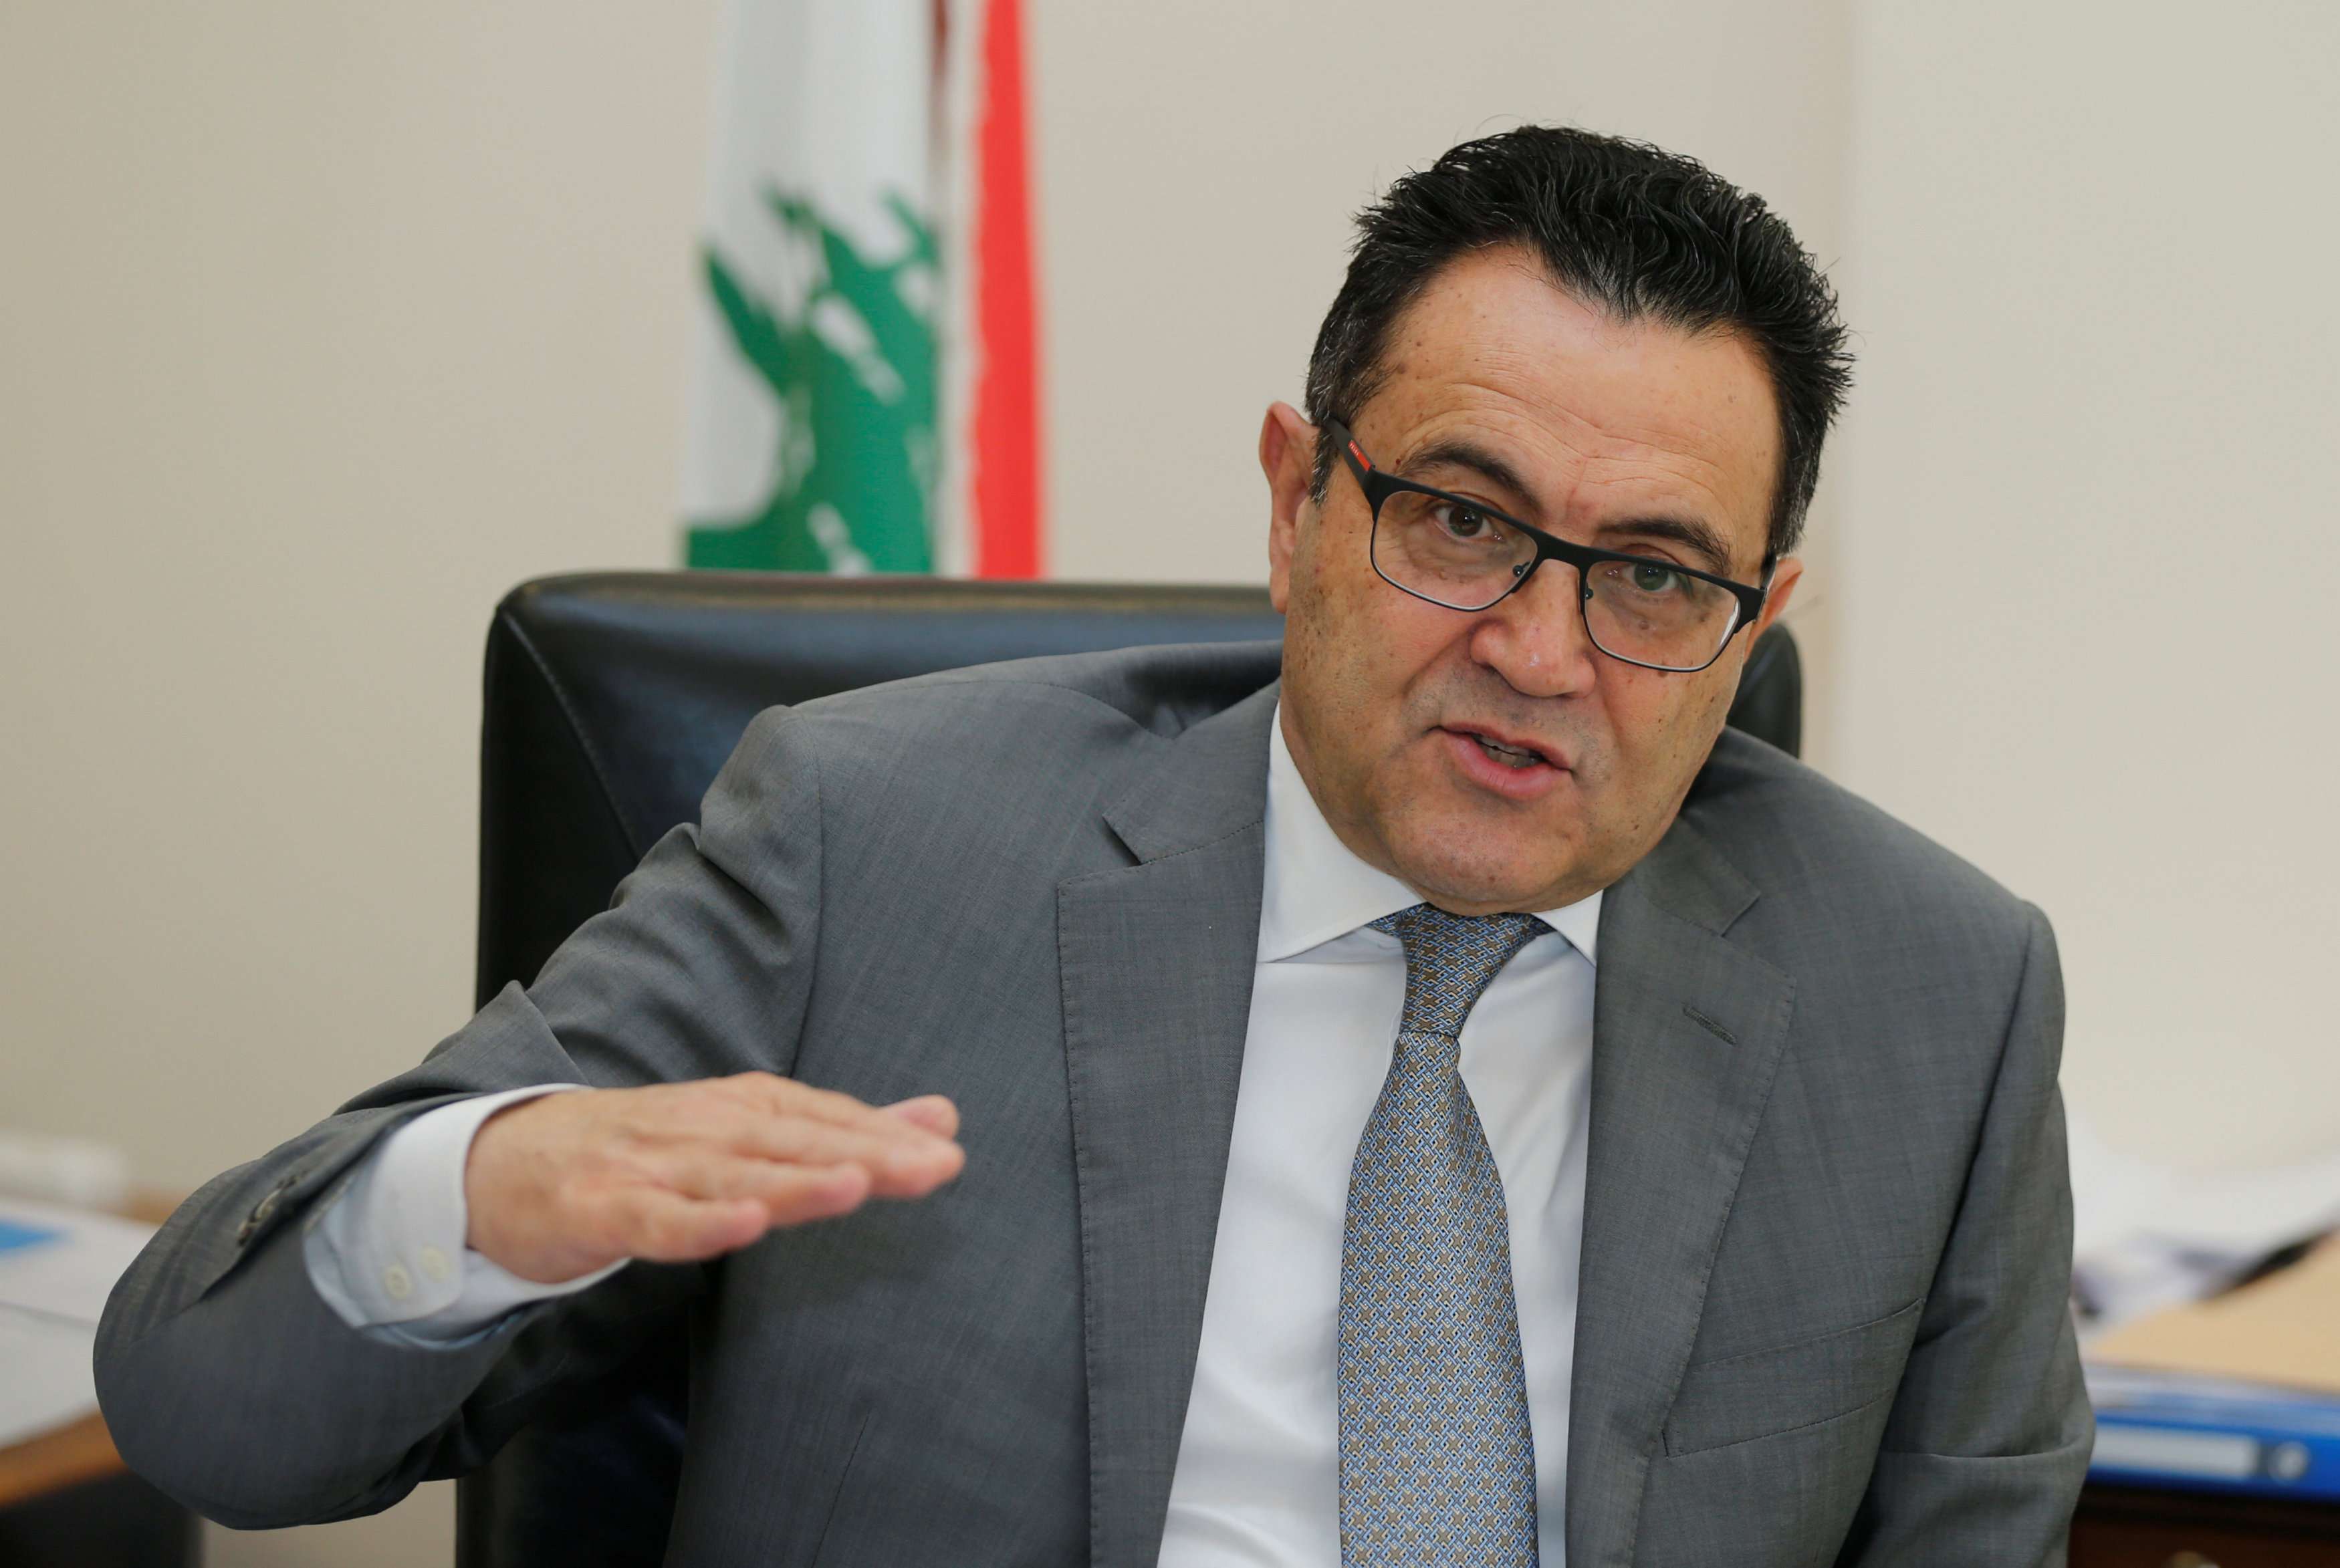 Nadim Munla, Lebanese Prime Minister Saad al-Hariri's senior adviser